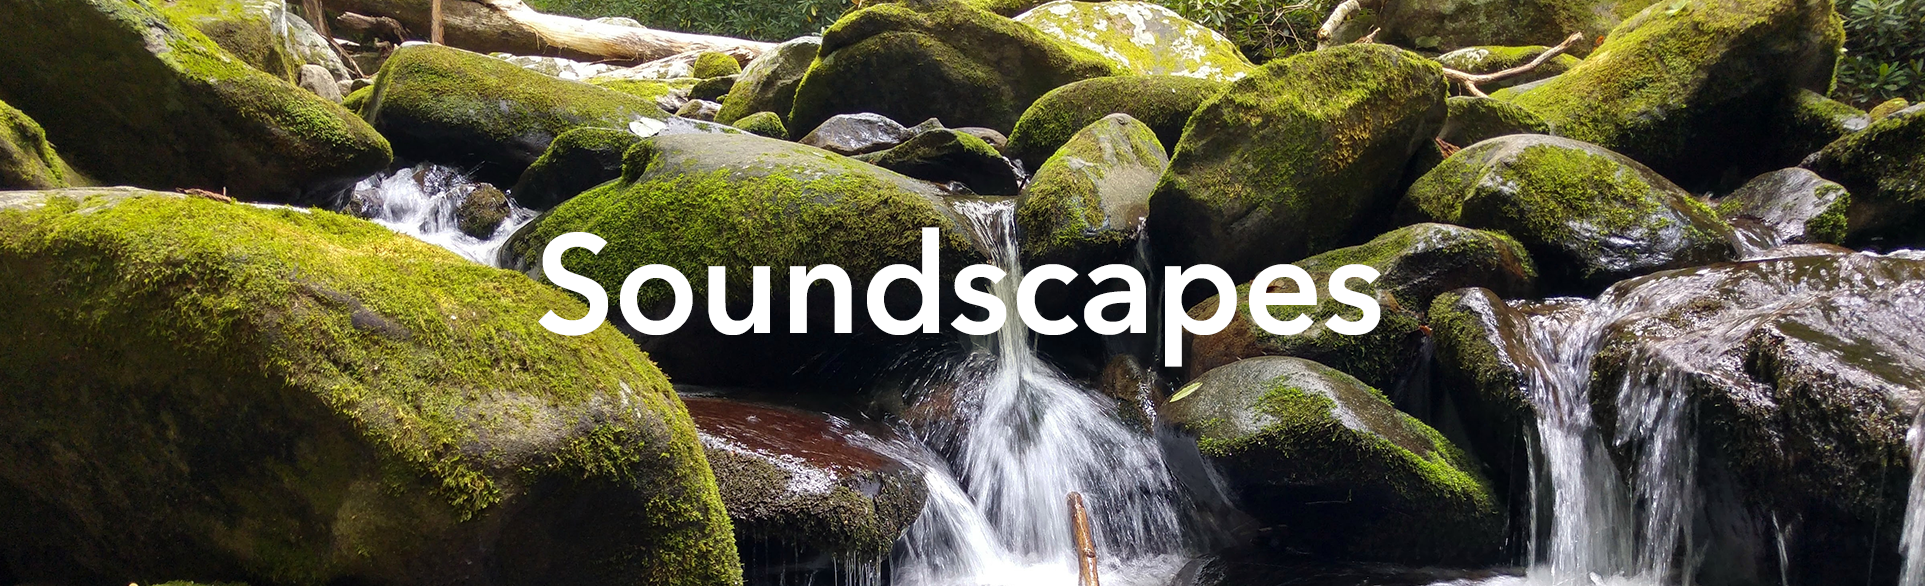 Soundscapes.png